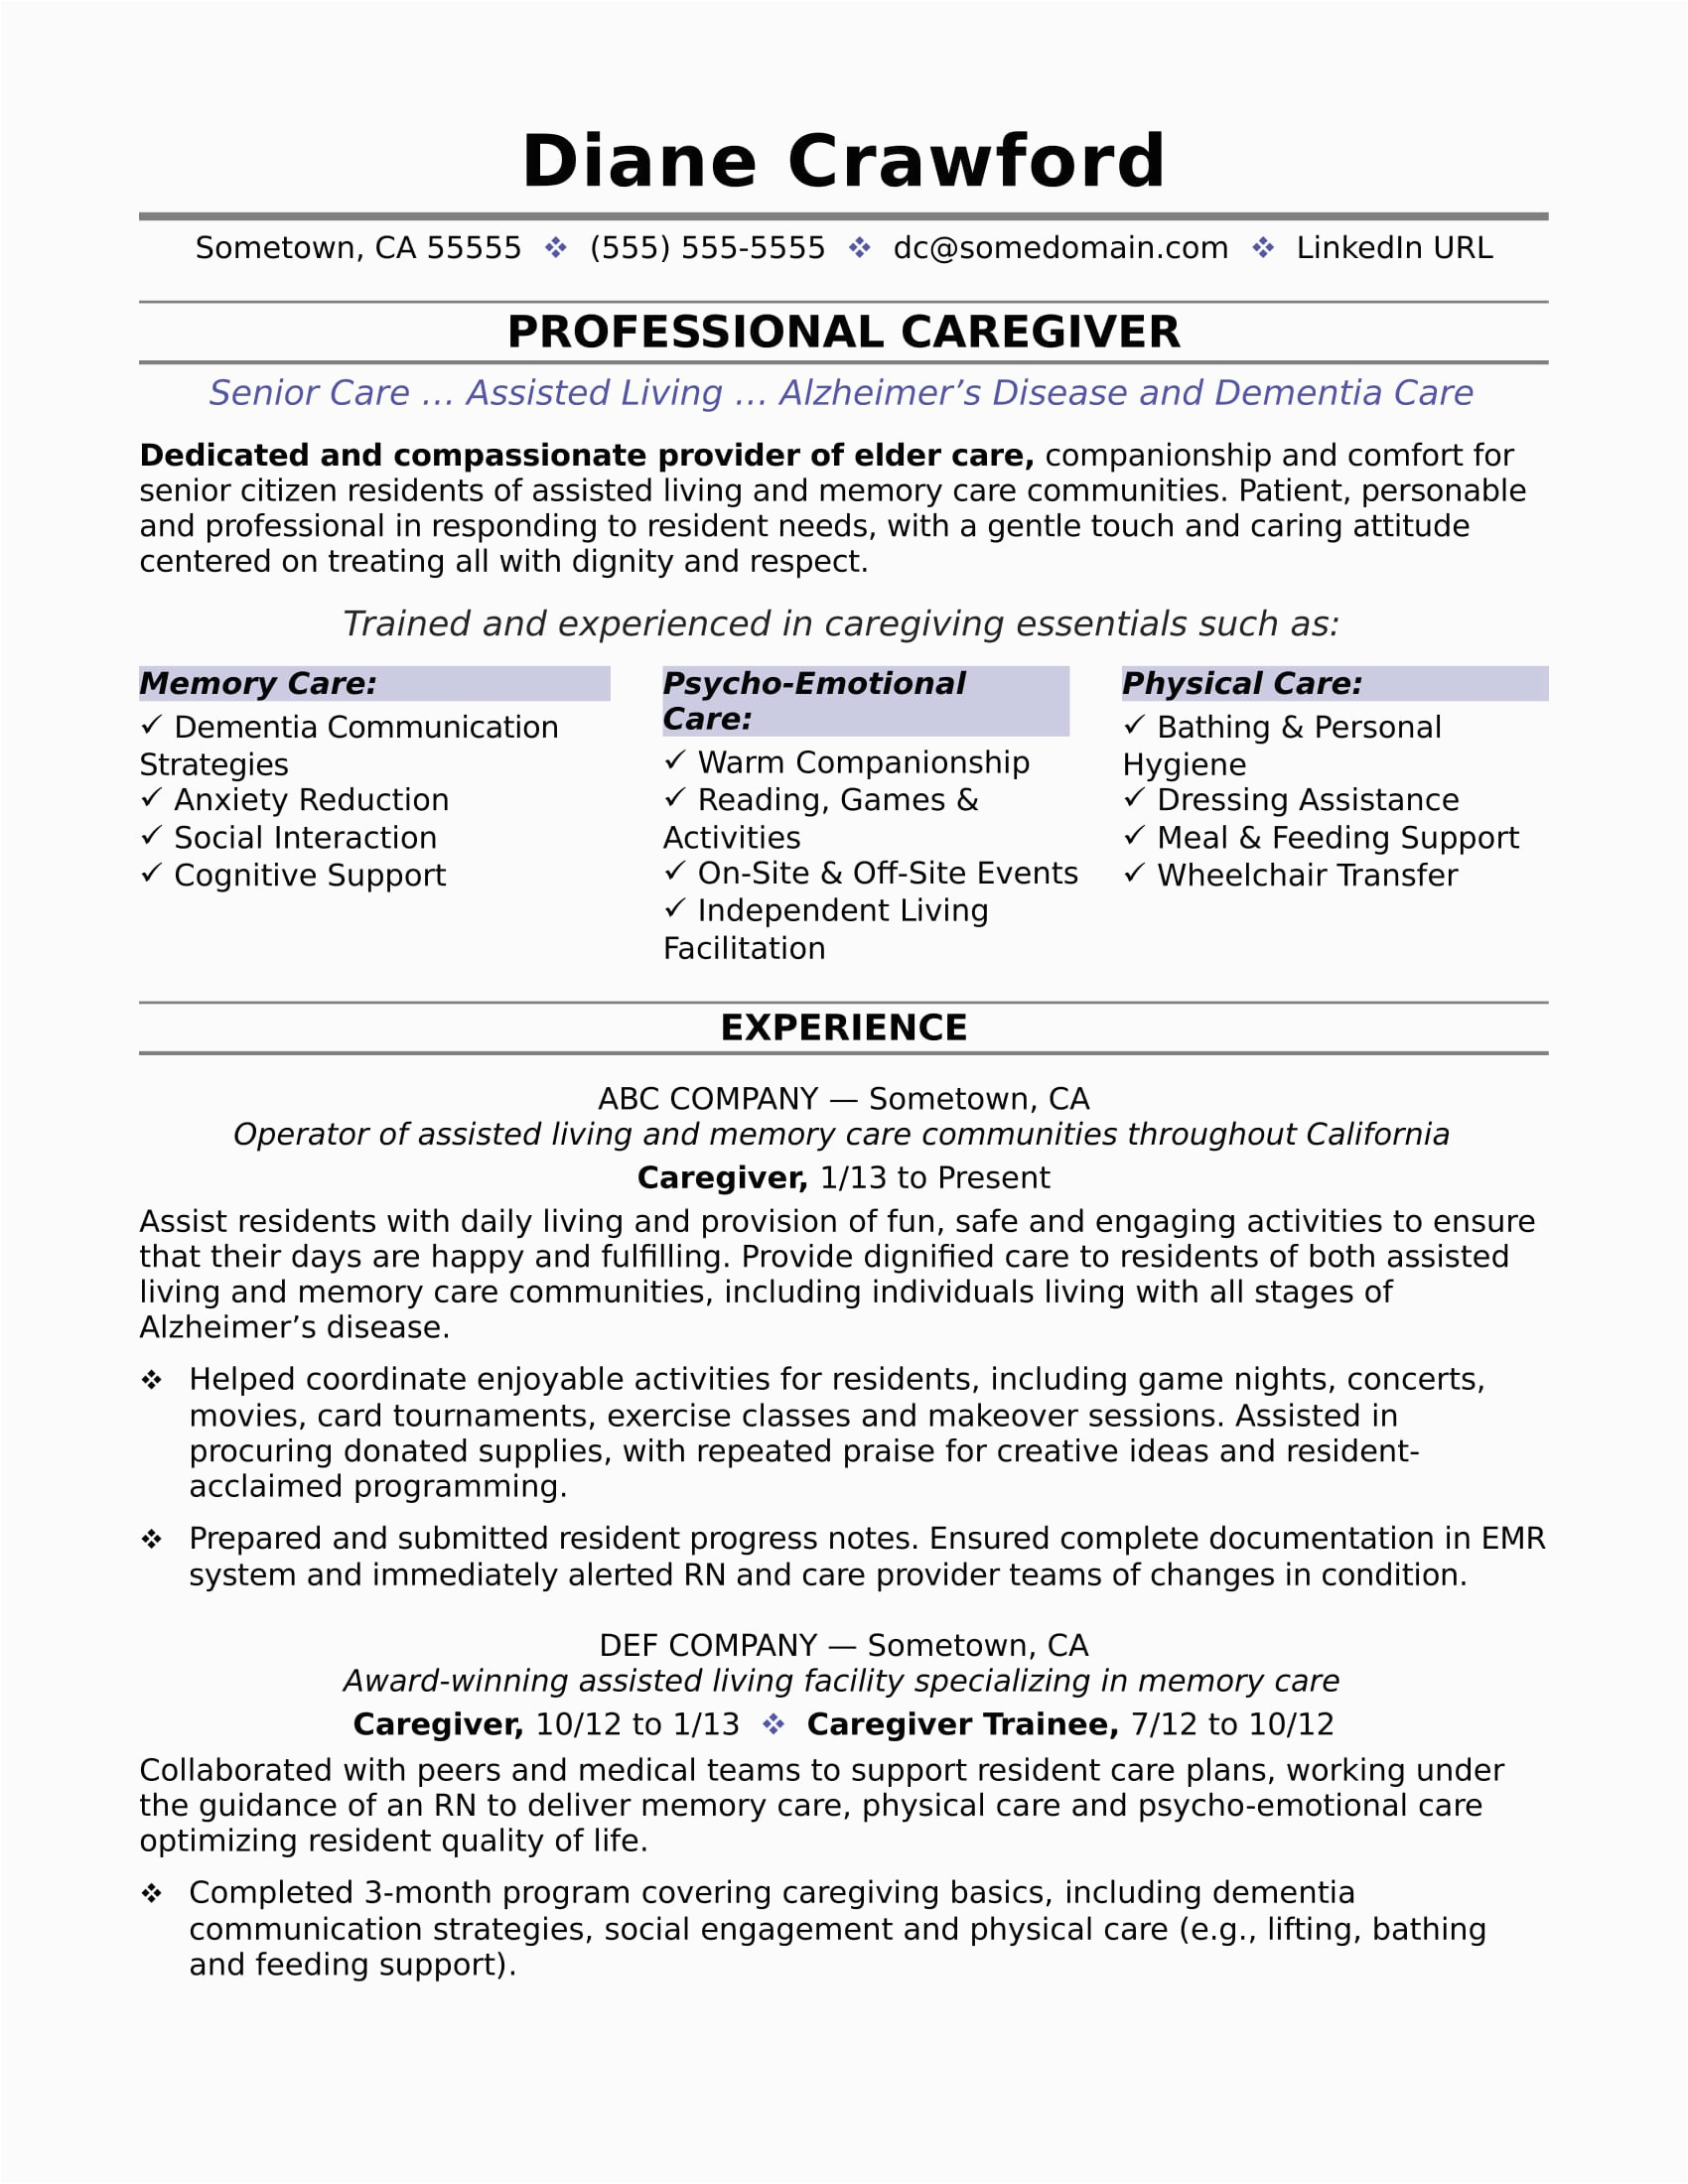 Sample Resume for Caregiver Position Elderly Caregiver Resume Sample